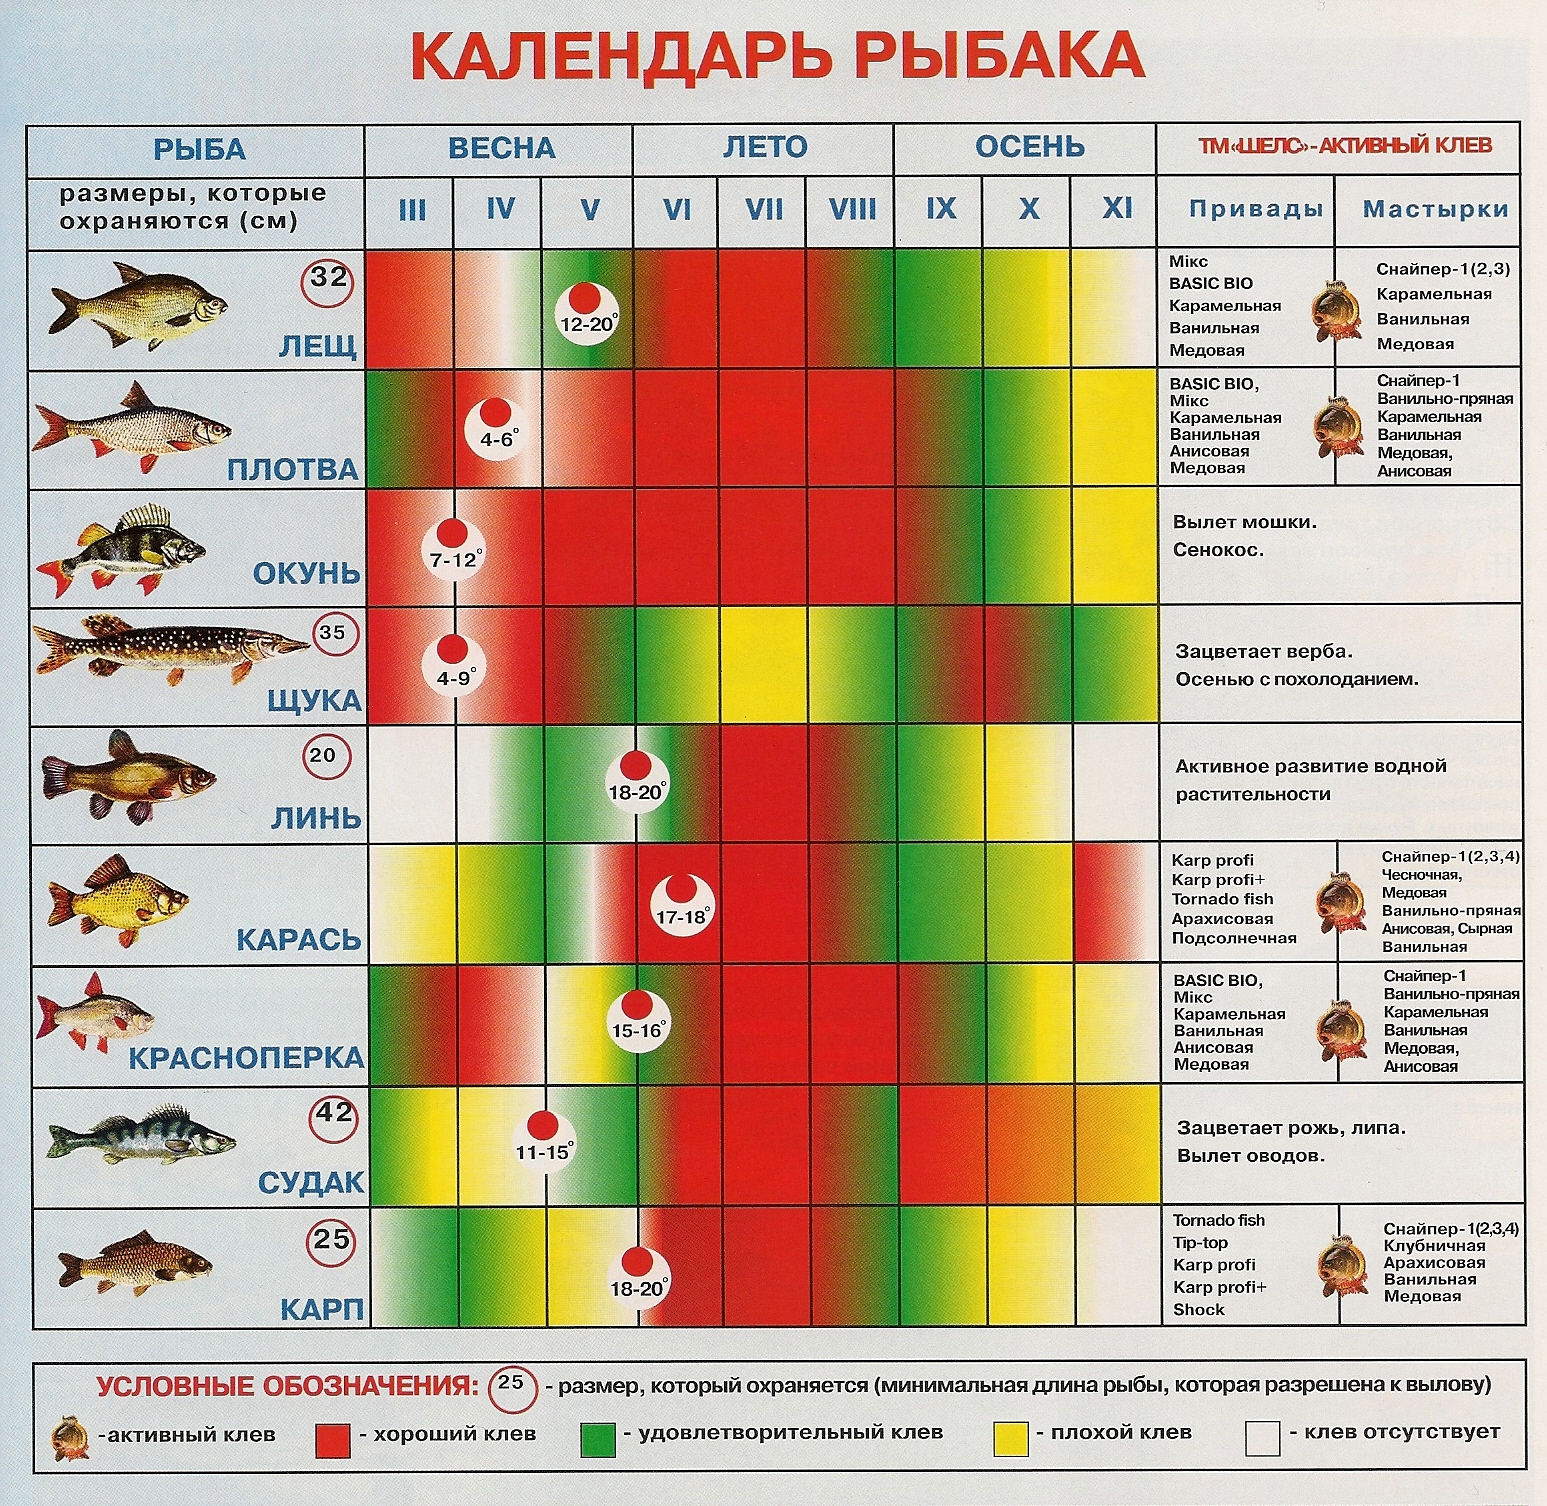 Календарь рыболова. зависимость клева рыб от сезона, от явлений природы, влияние погоды на клев